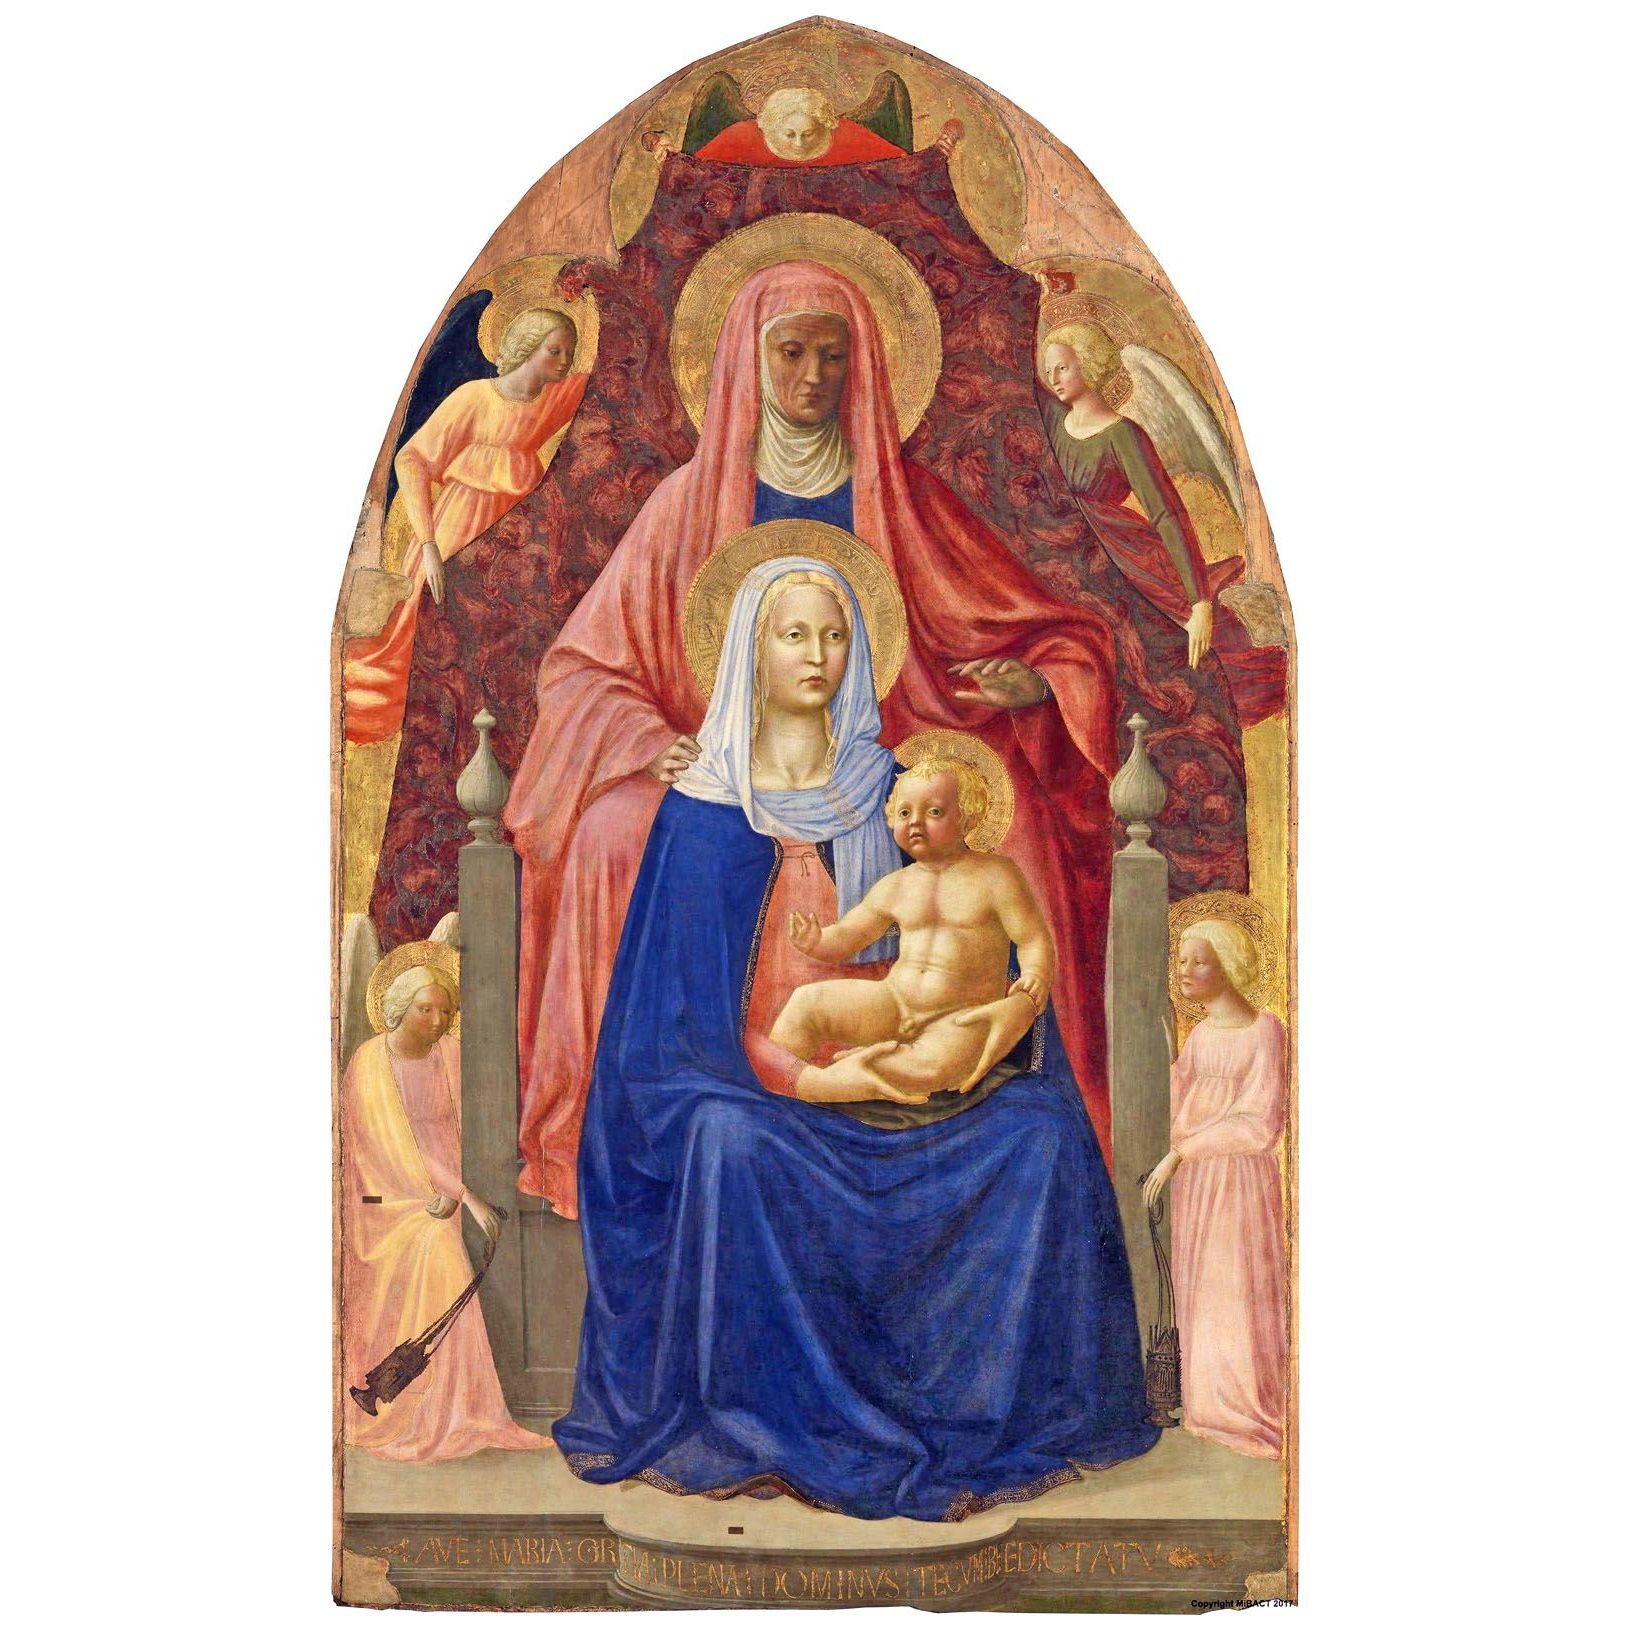 Мазаччо и Мазолино. Мадонна с младенцем и св. Анной. 1424. Уффици